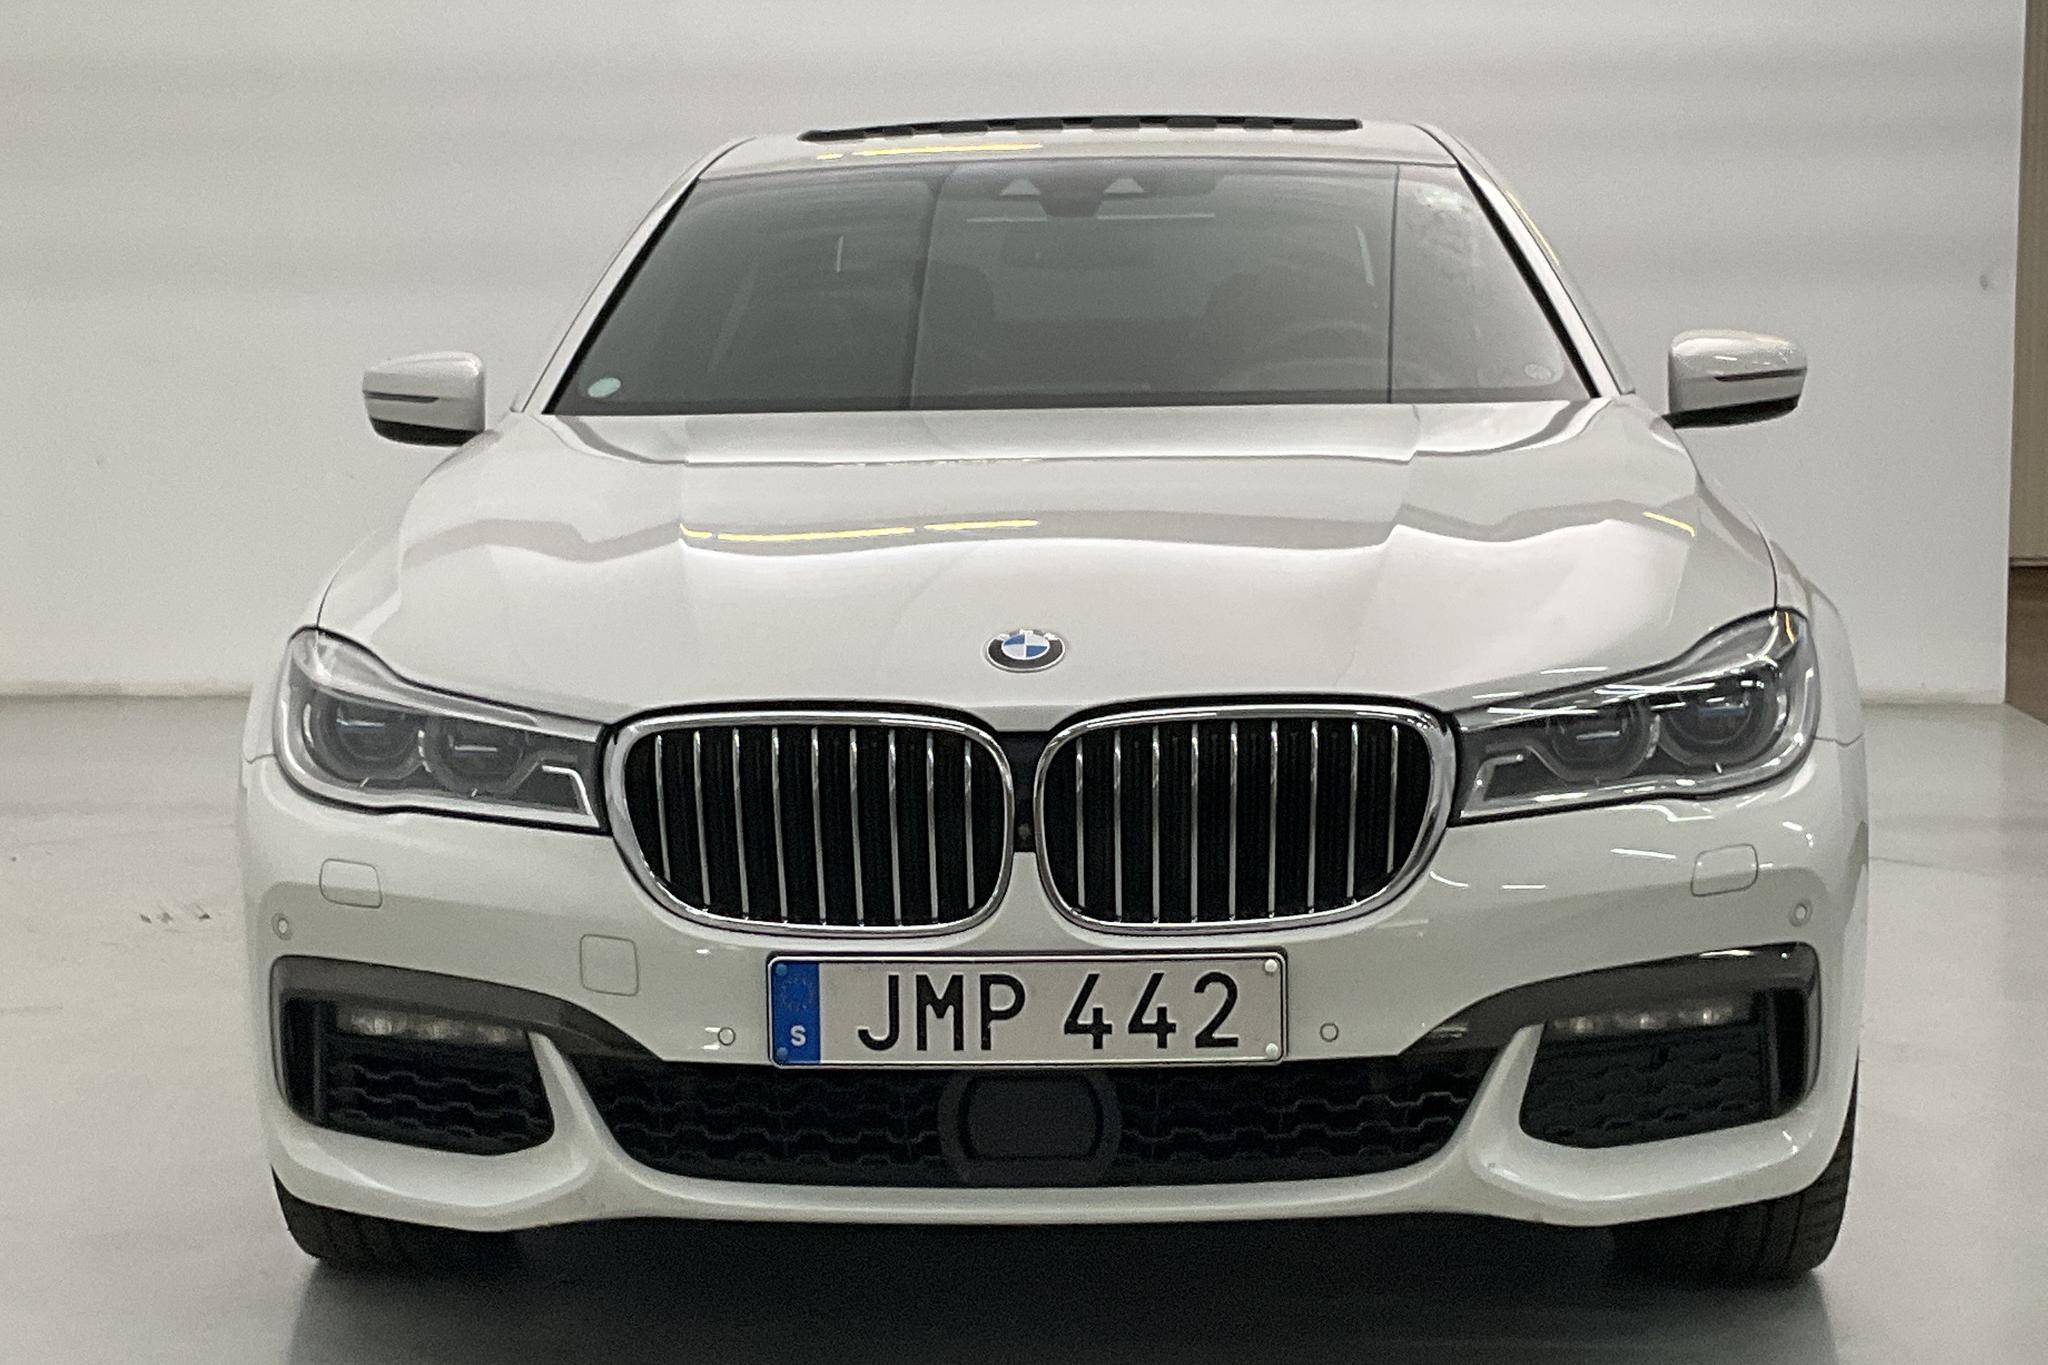 BMW 750i xDrive Sedan, G11 (450hk) - 68 480 km - Automatic - white - 2018